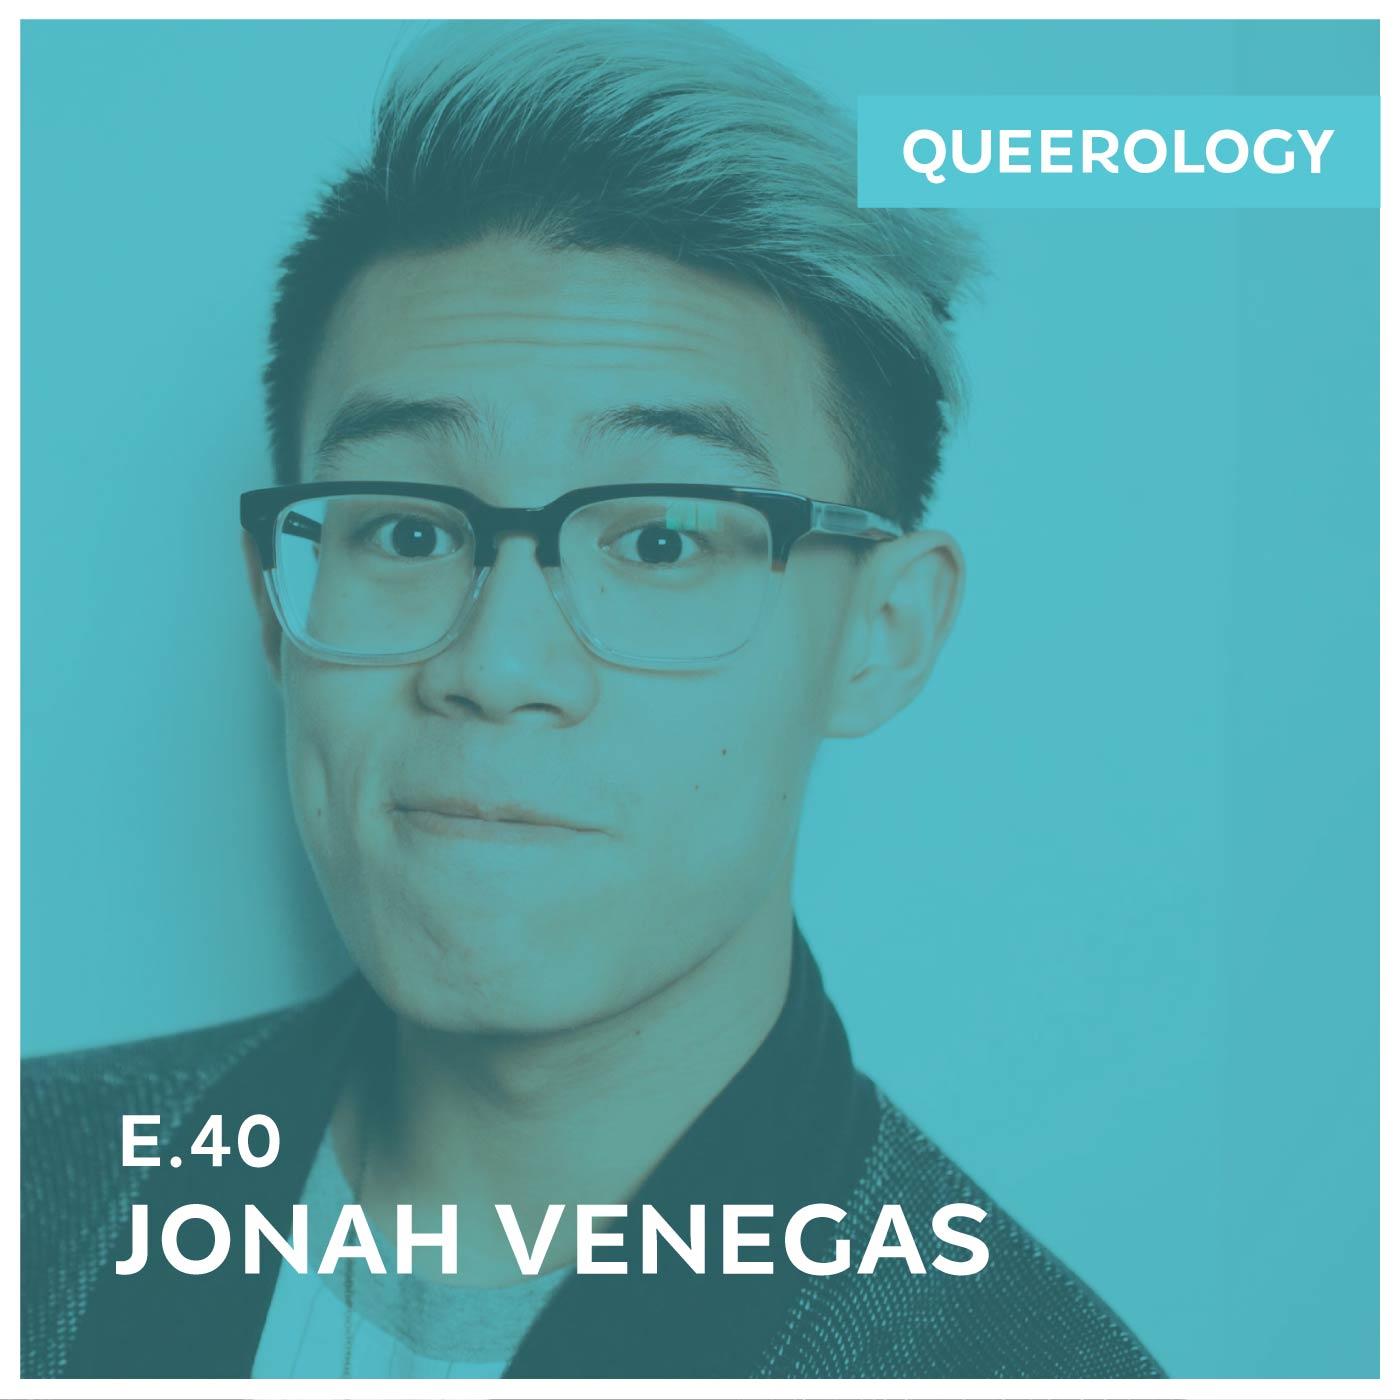 Jonah Venegas Dyed His Hair - Episode 40